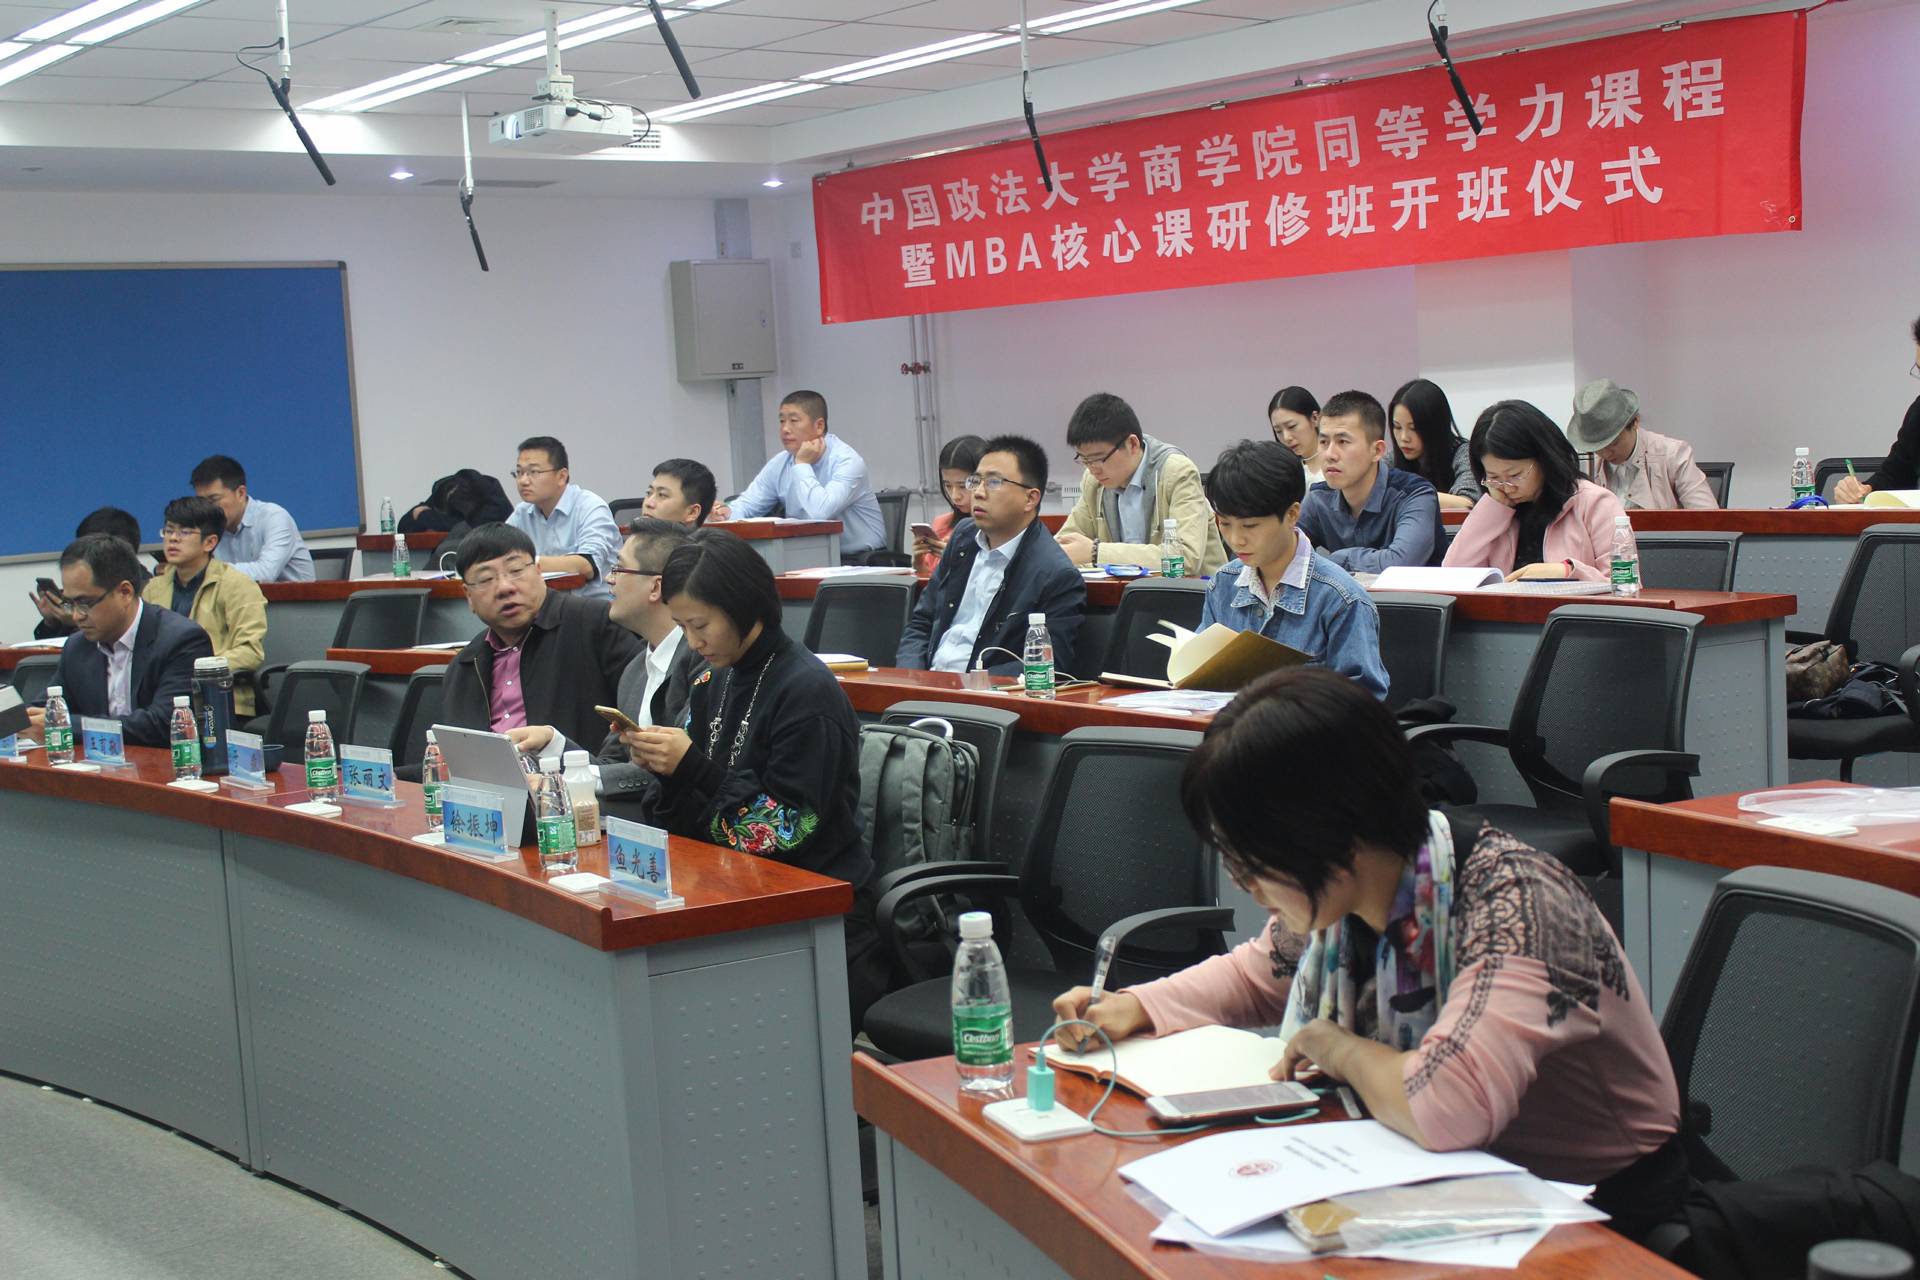 中国政法大学商学院同等学力课程暨MBA核心课程研修班开班仪式06